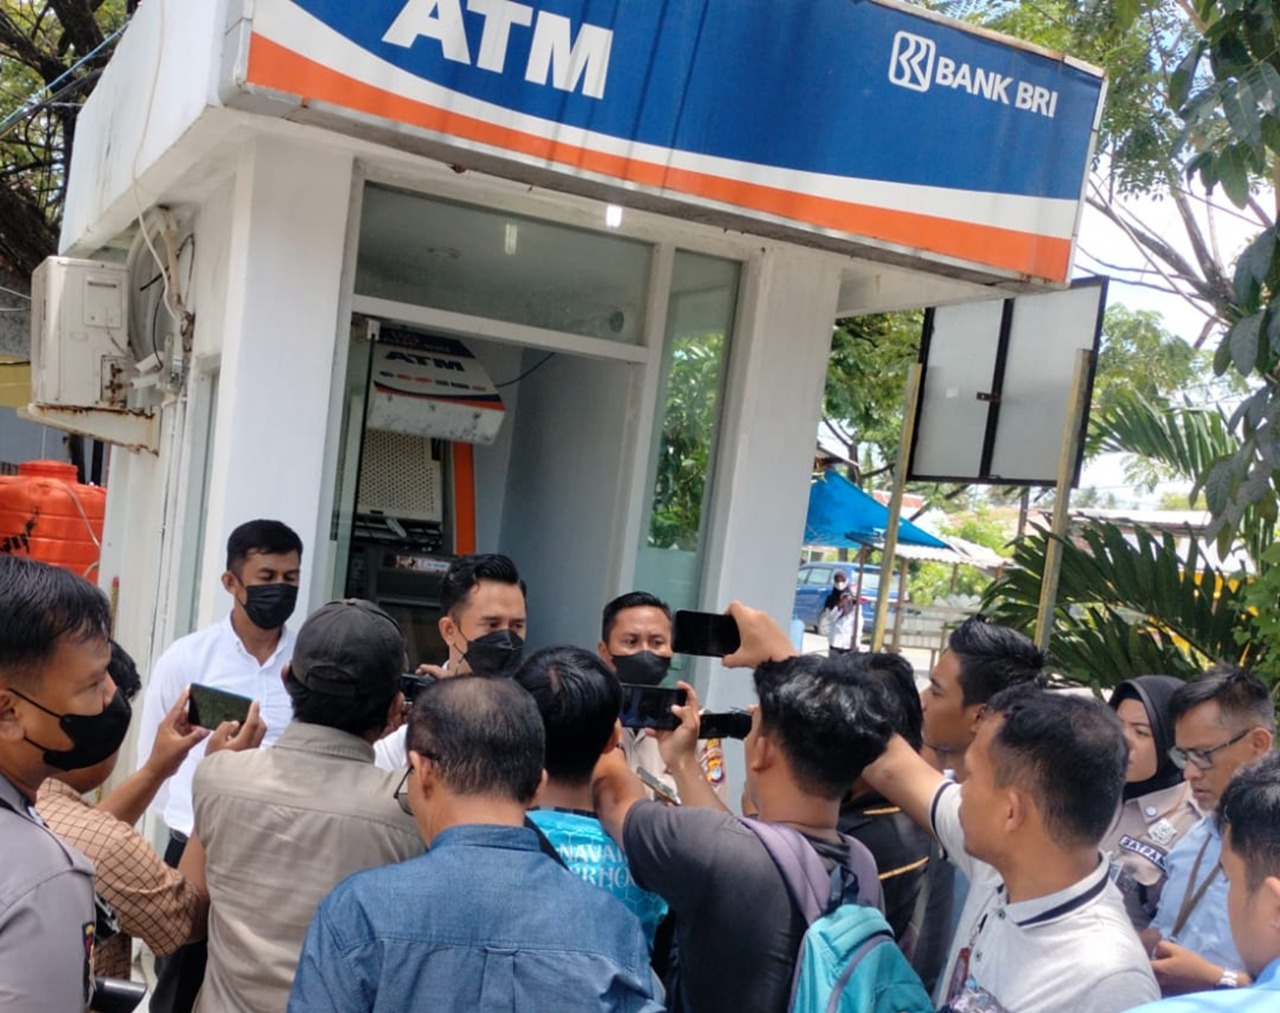 Ratusan Juta Raib, Maling Bobol 2 Mesin ATM di Majene